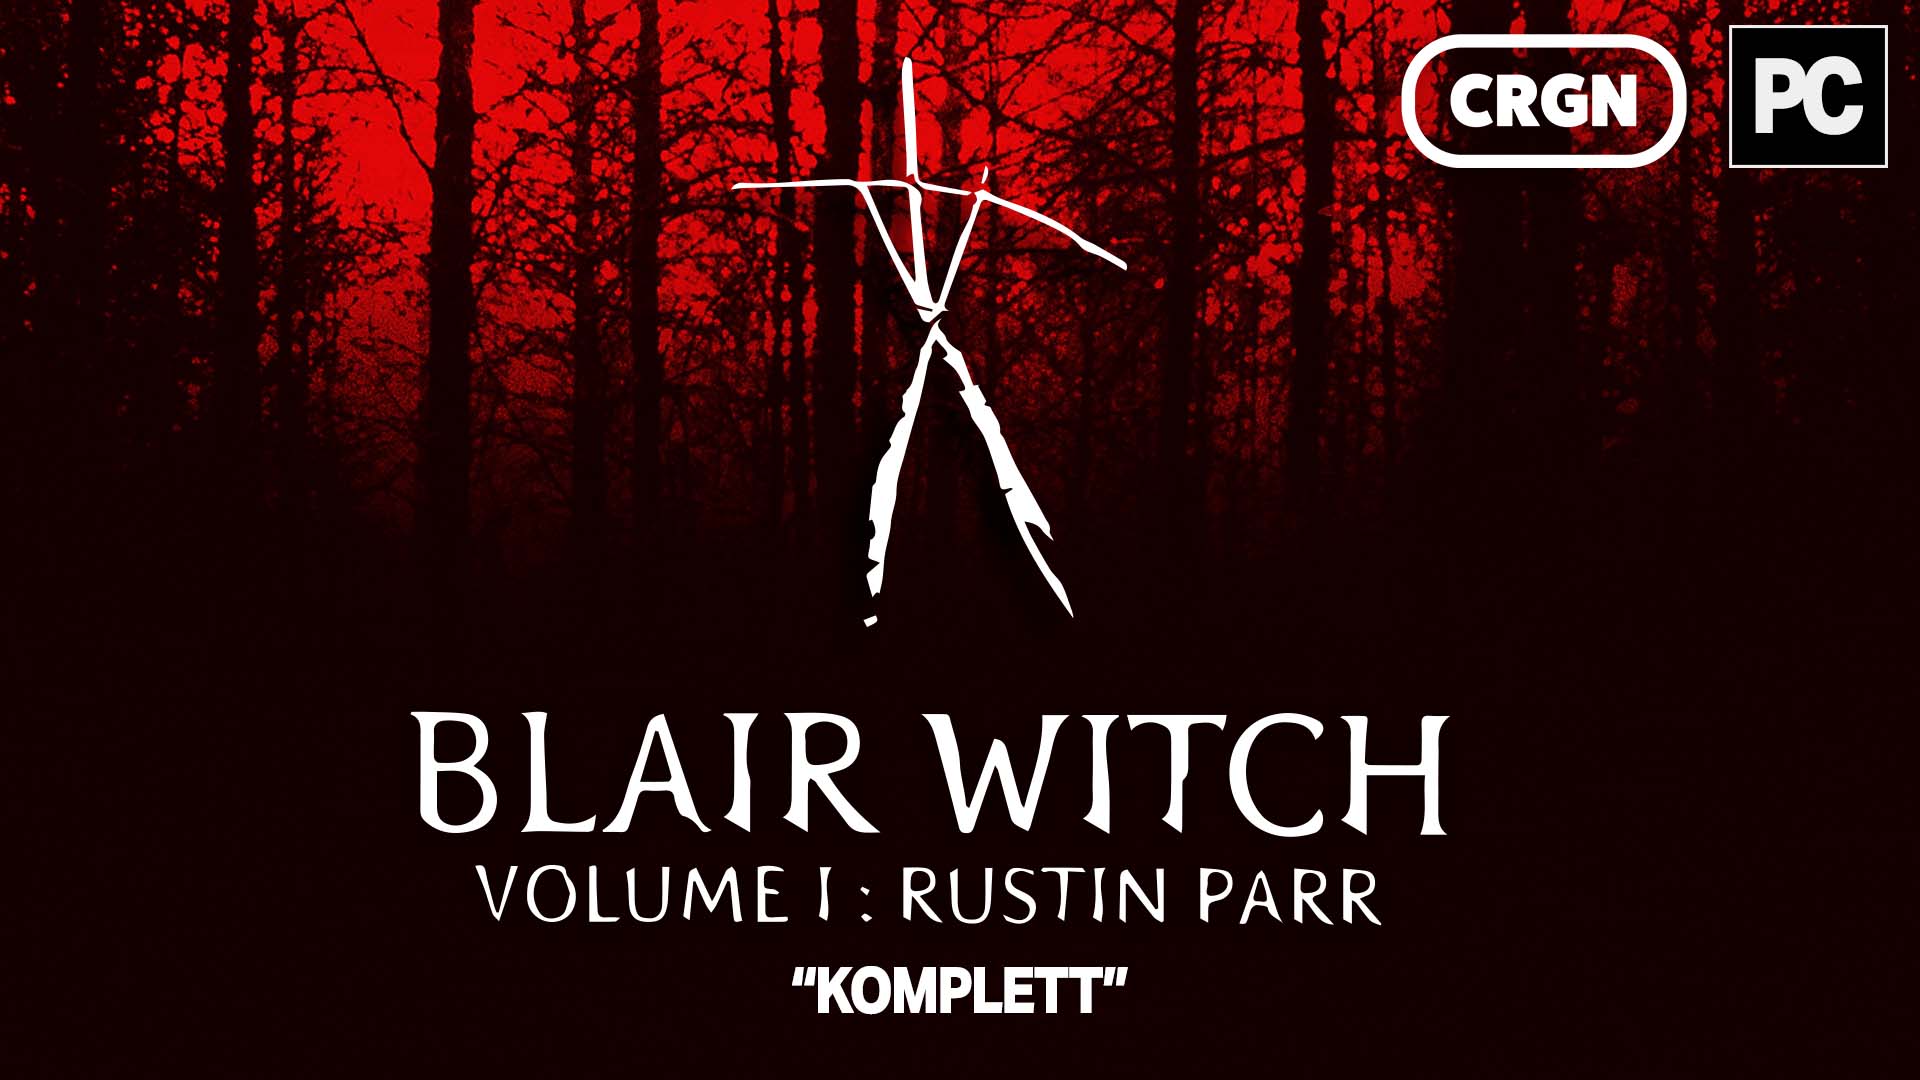 Blair Witch Volume:1 Rustin Parr - Durchgespielt! 